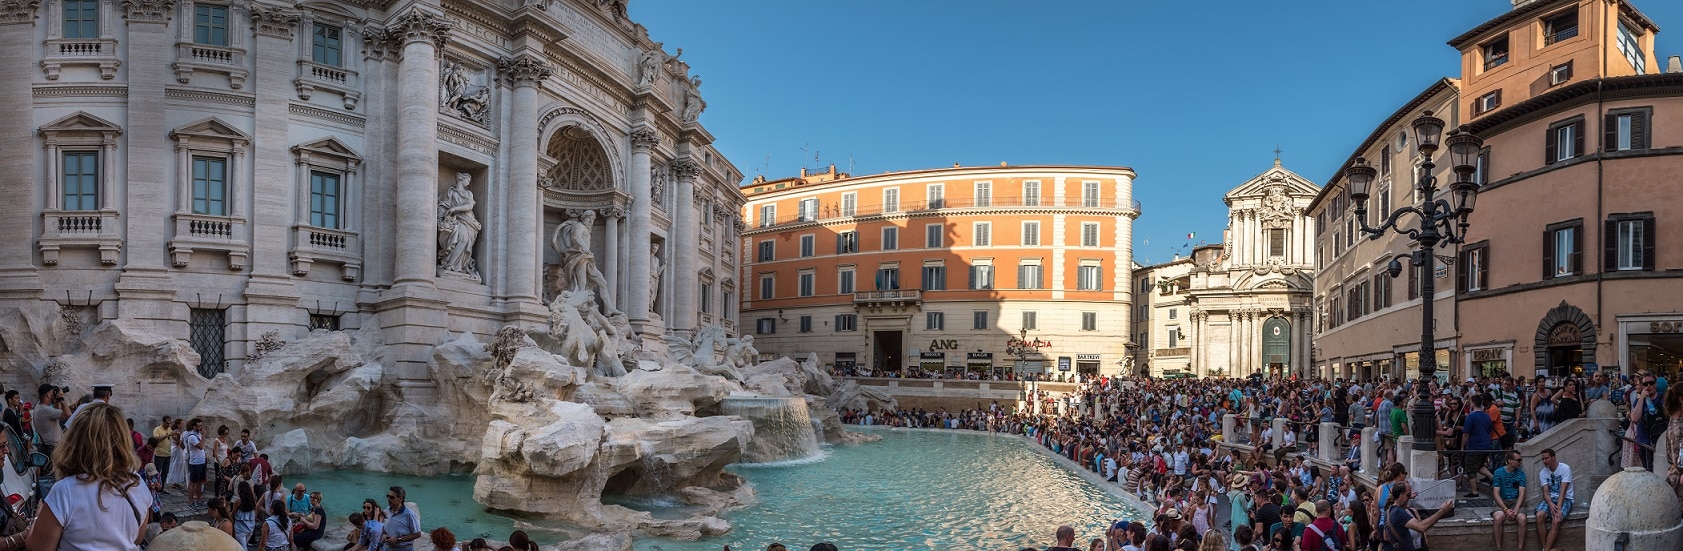 L'emblématique fontaine de Trévi à Rome